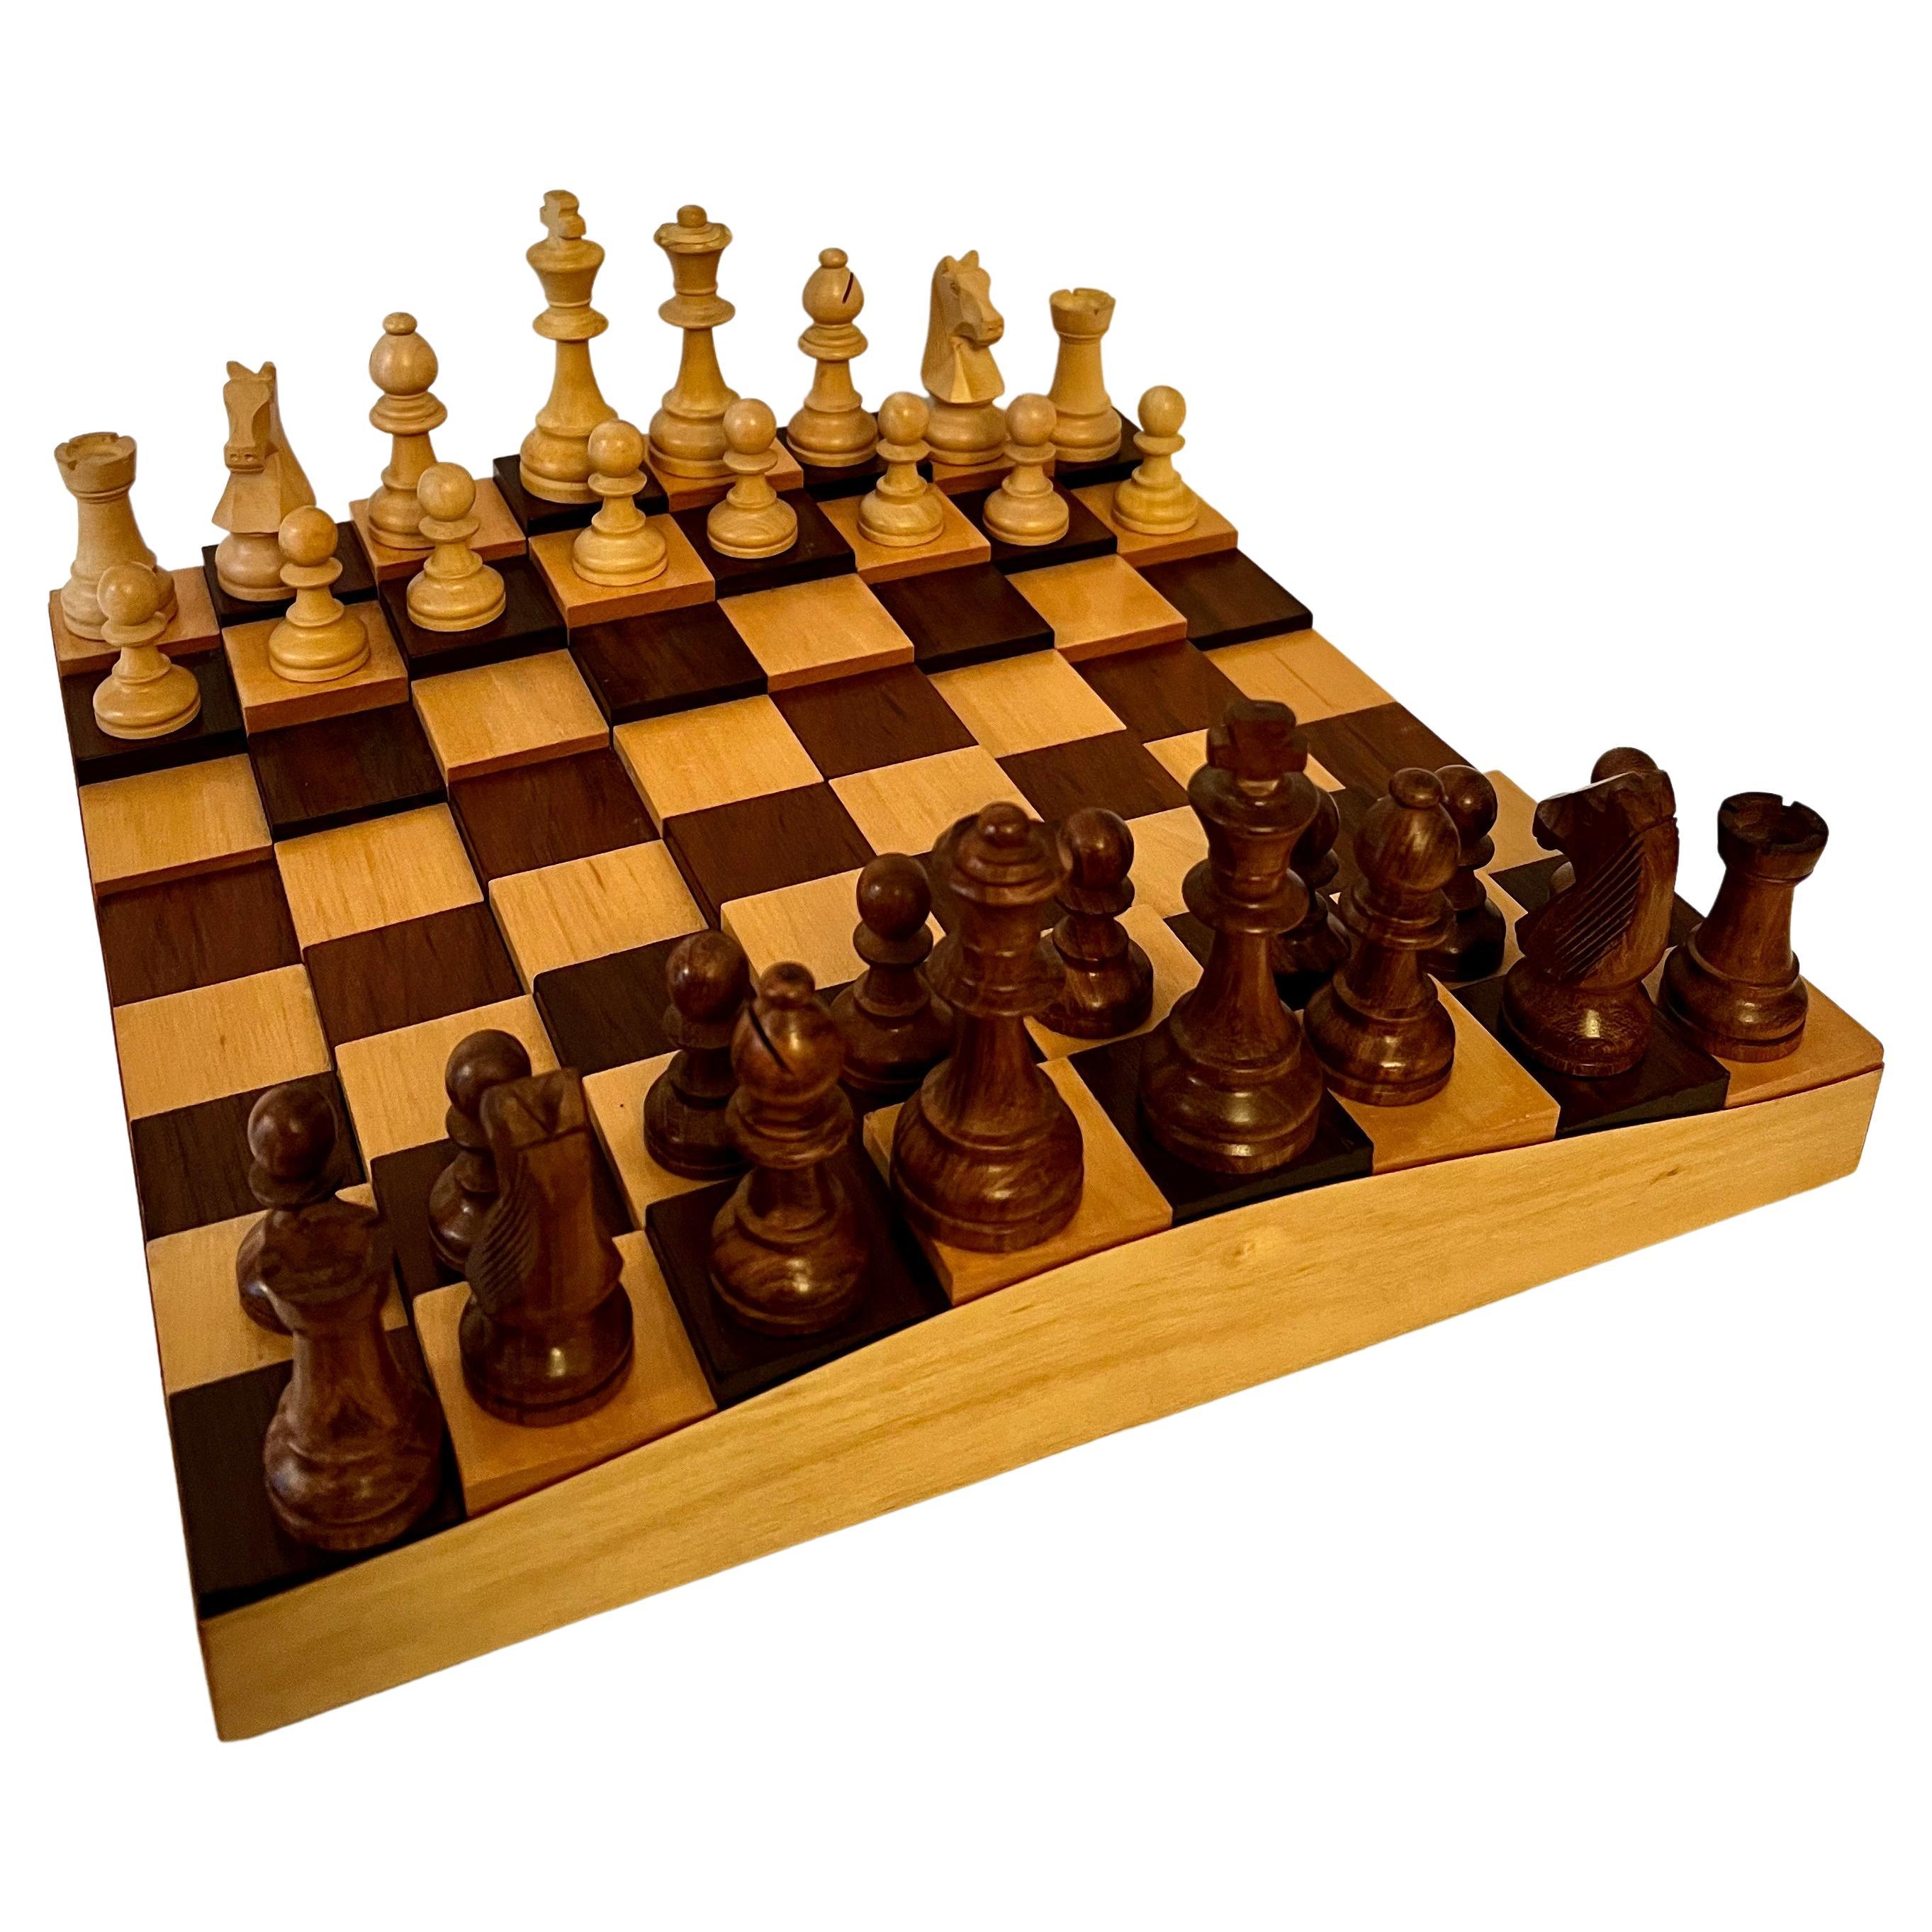 Planche à échecs ou à carreaux en bois 3 dimensions avec joueurs d'échecs